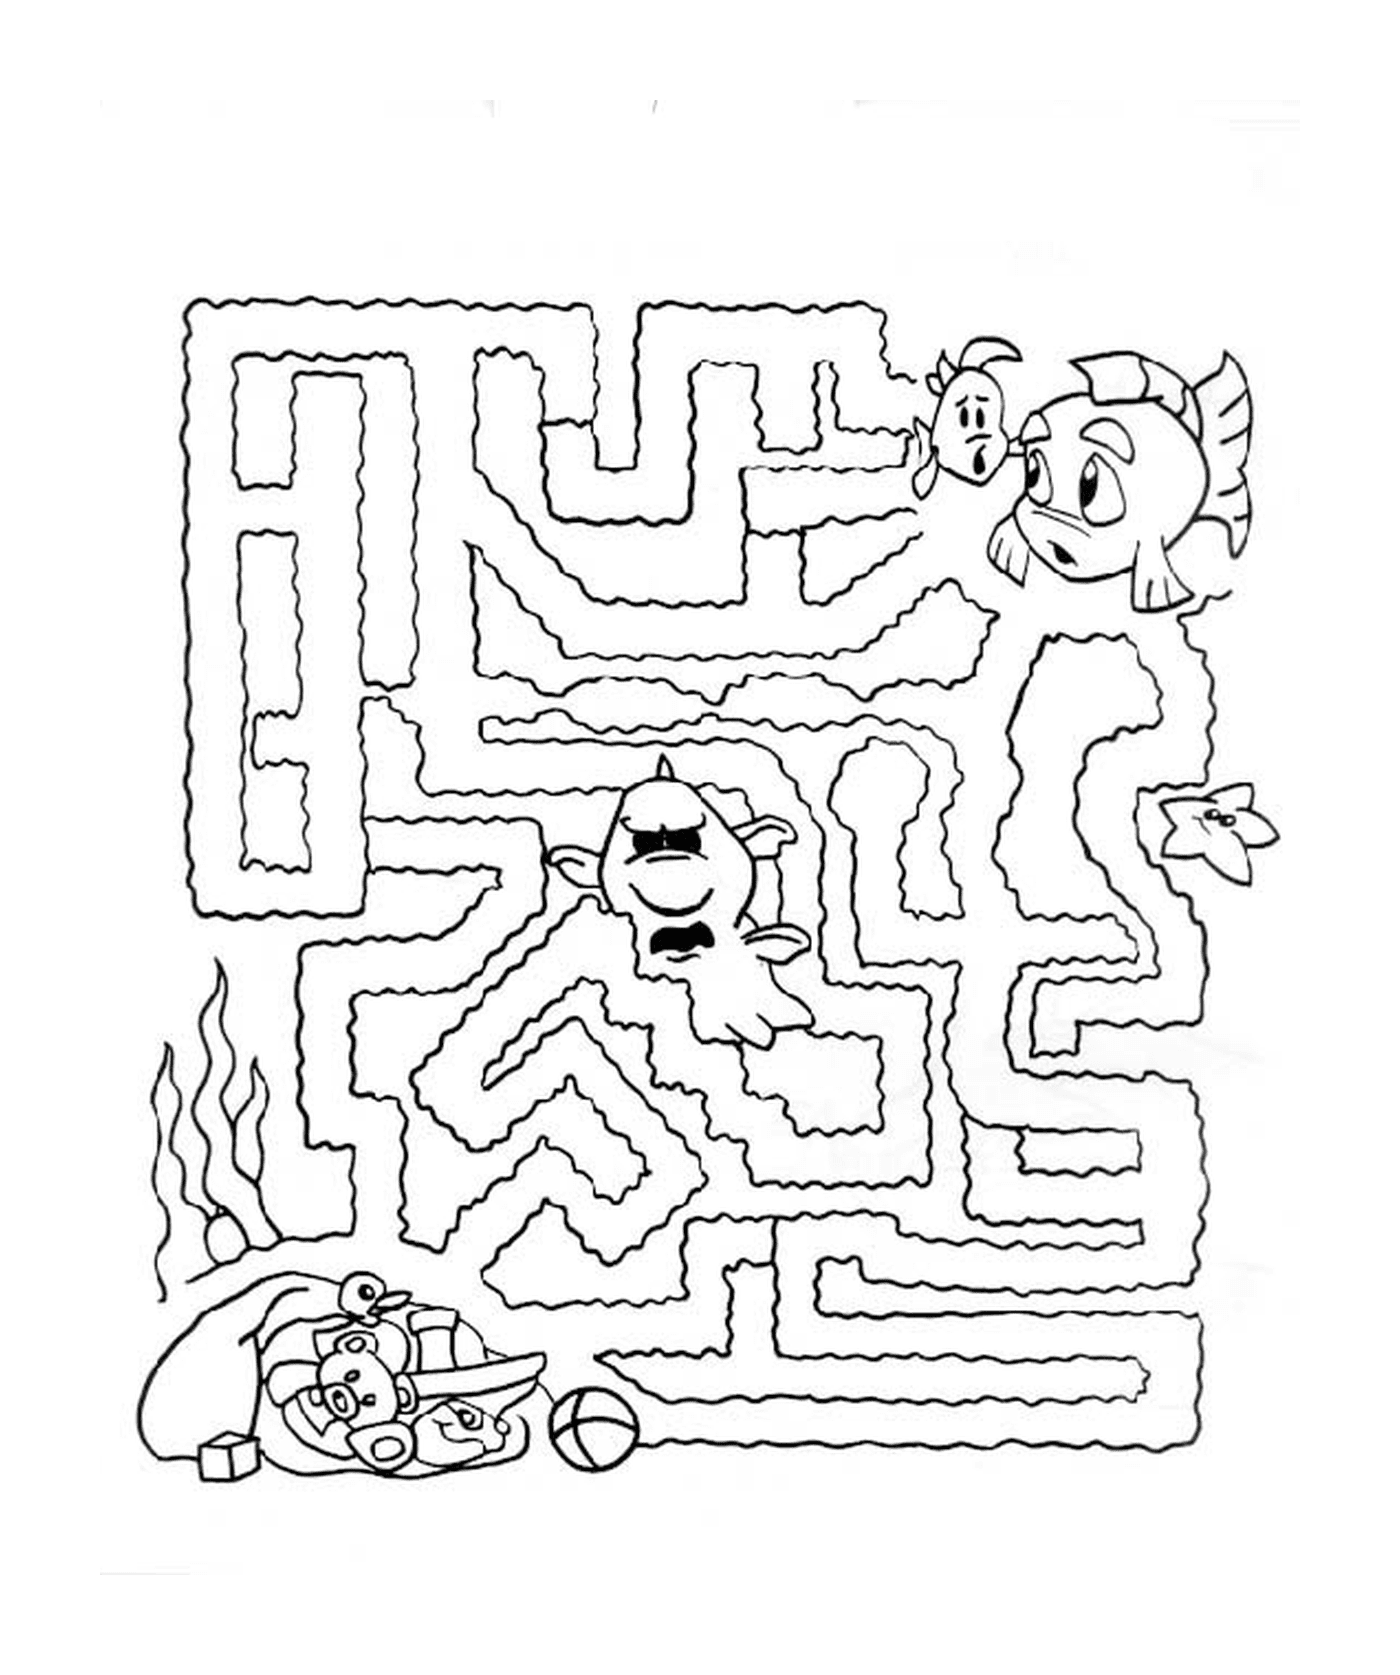  Labyrinth游戏:尼莫·普瓦松 